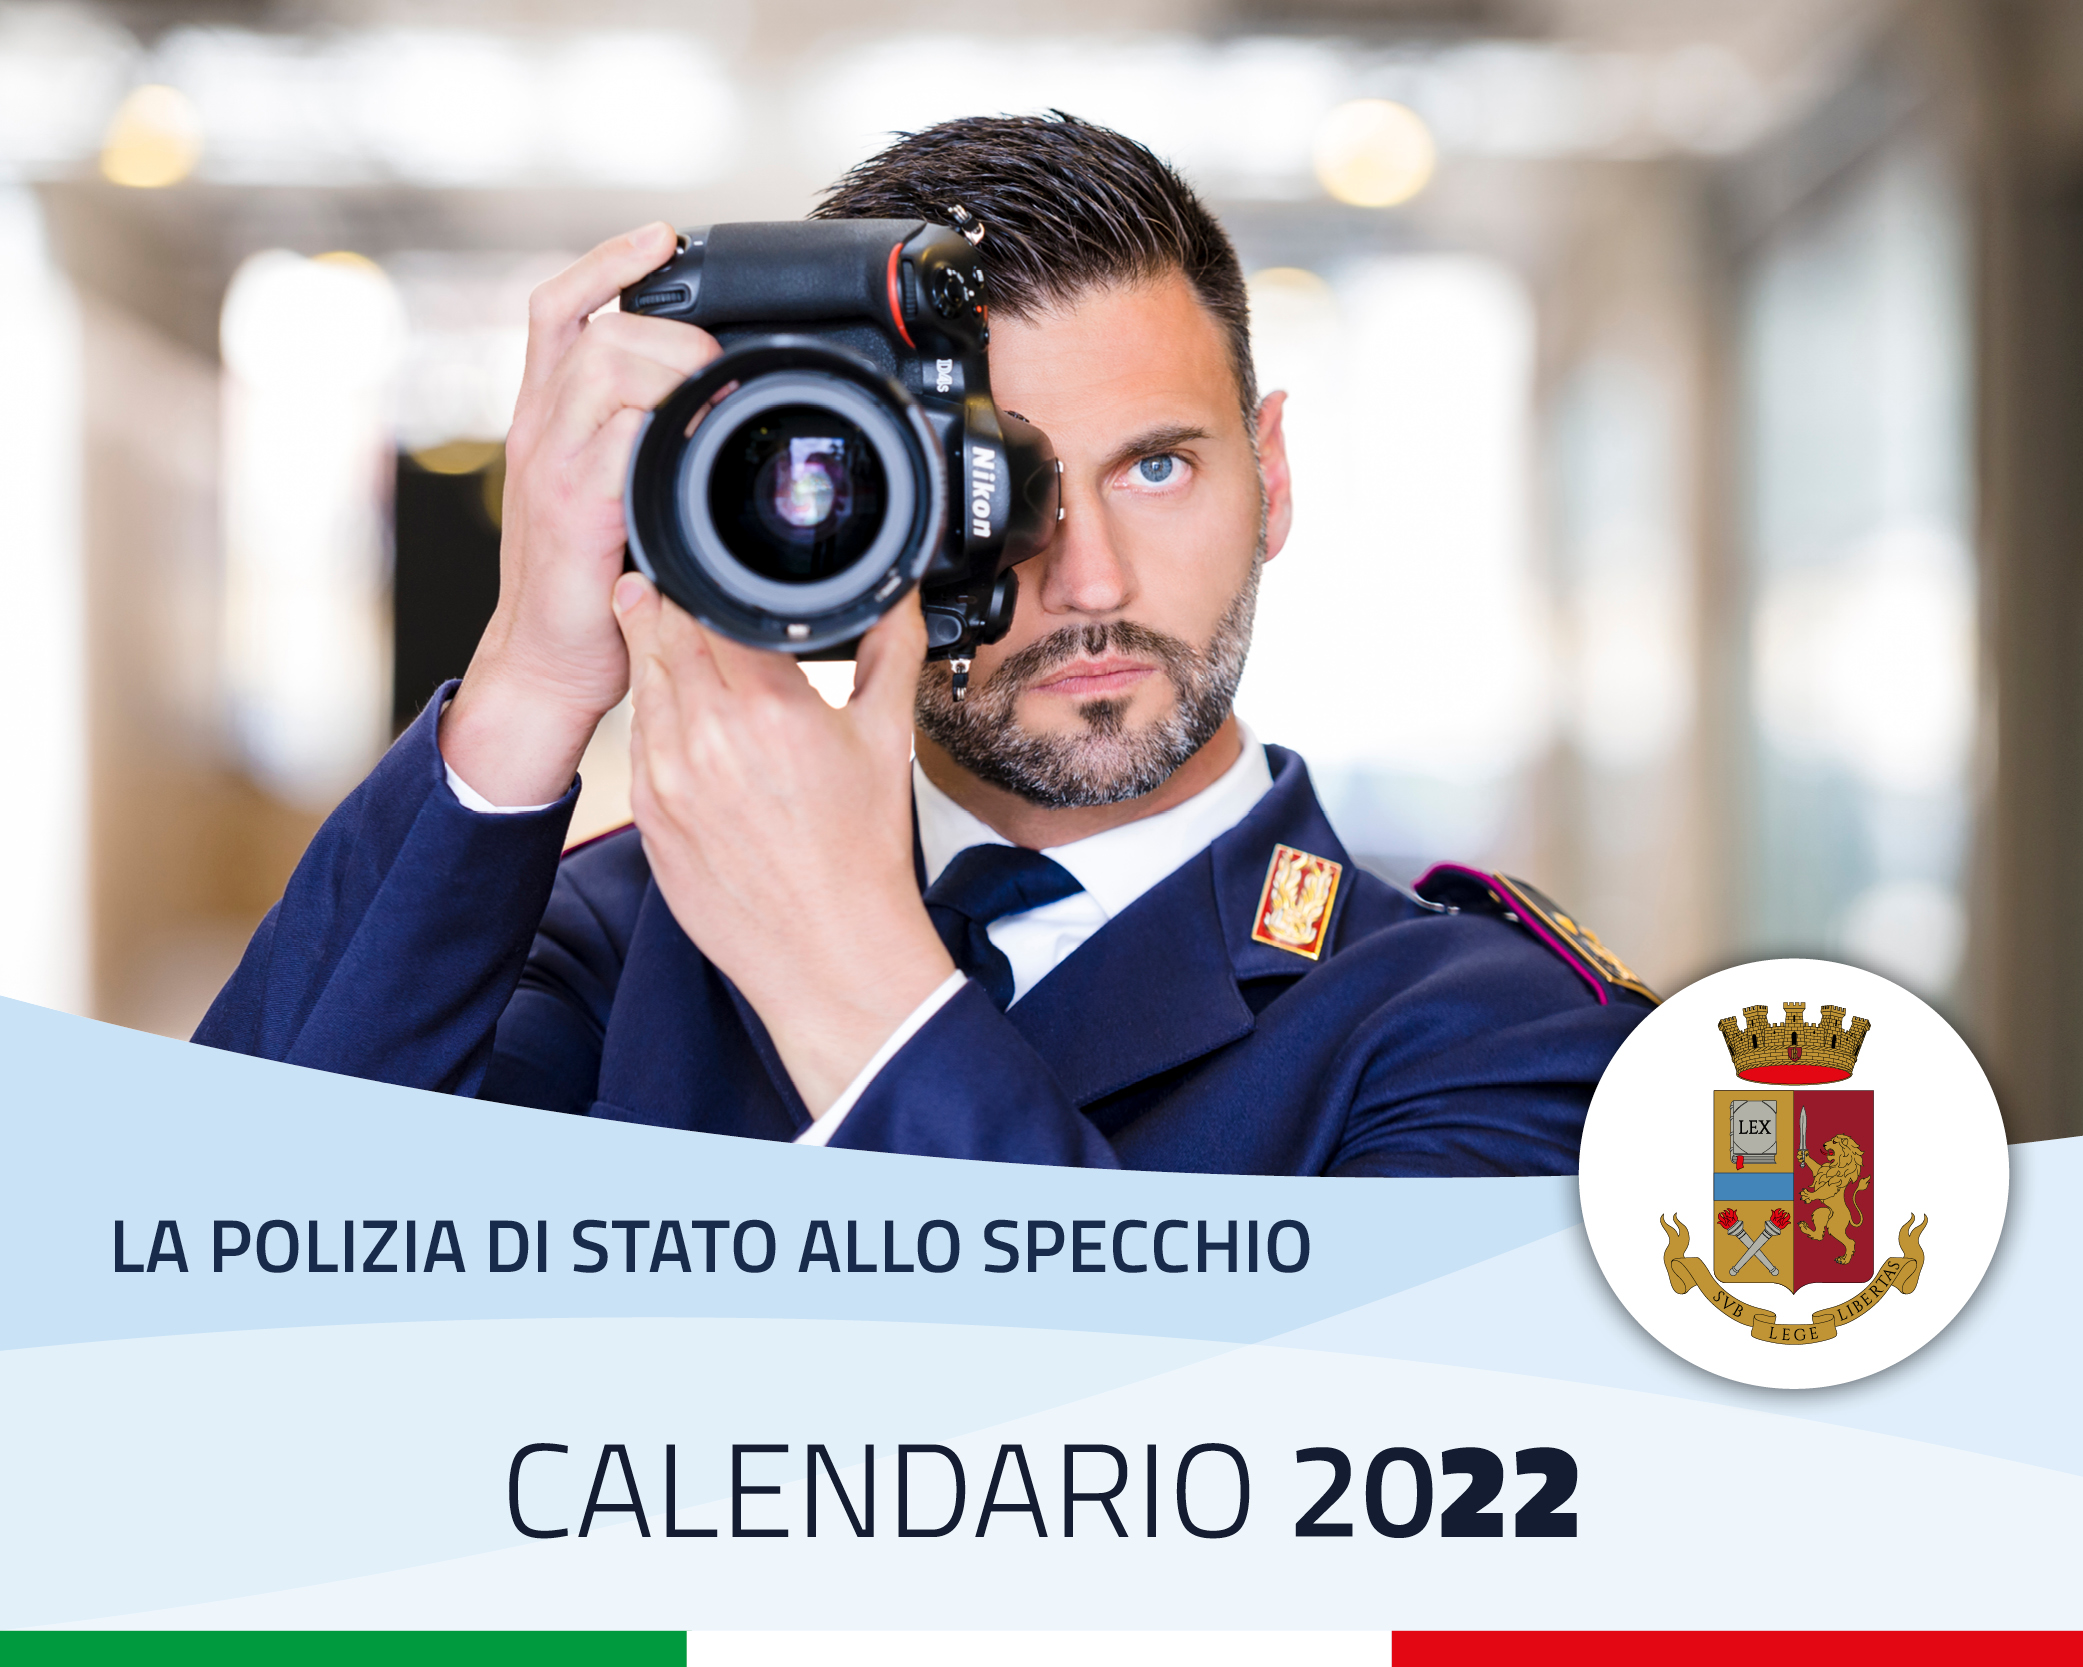 Calendario 2022 della Polizia di Stato